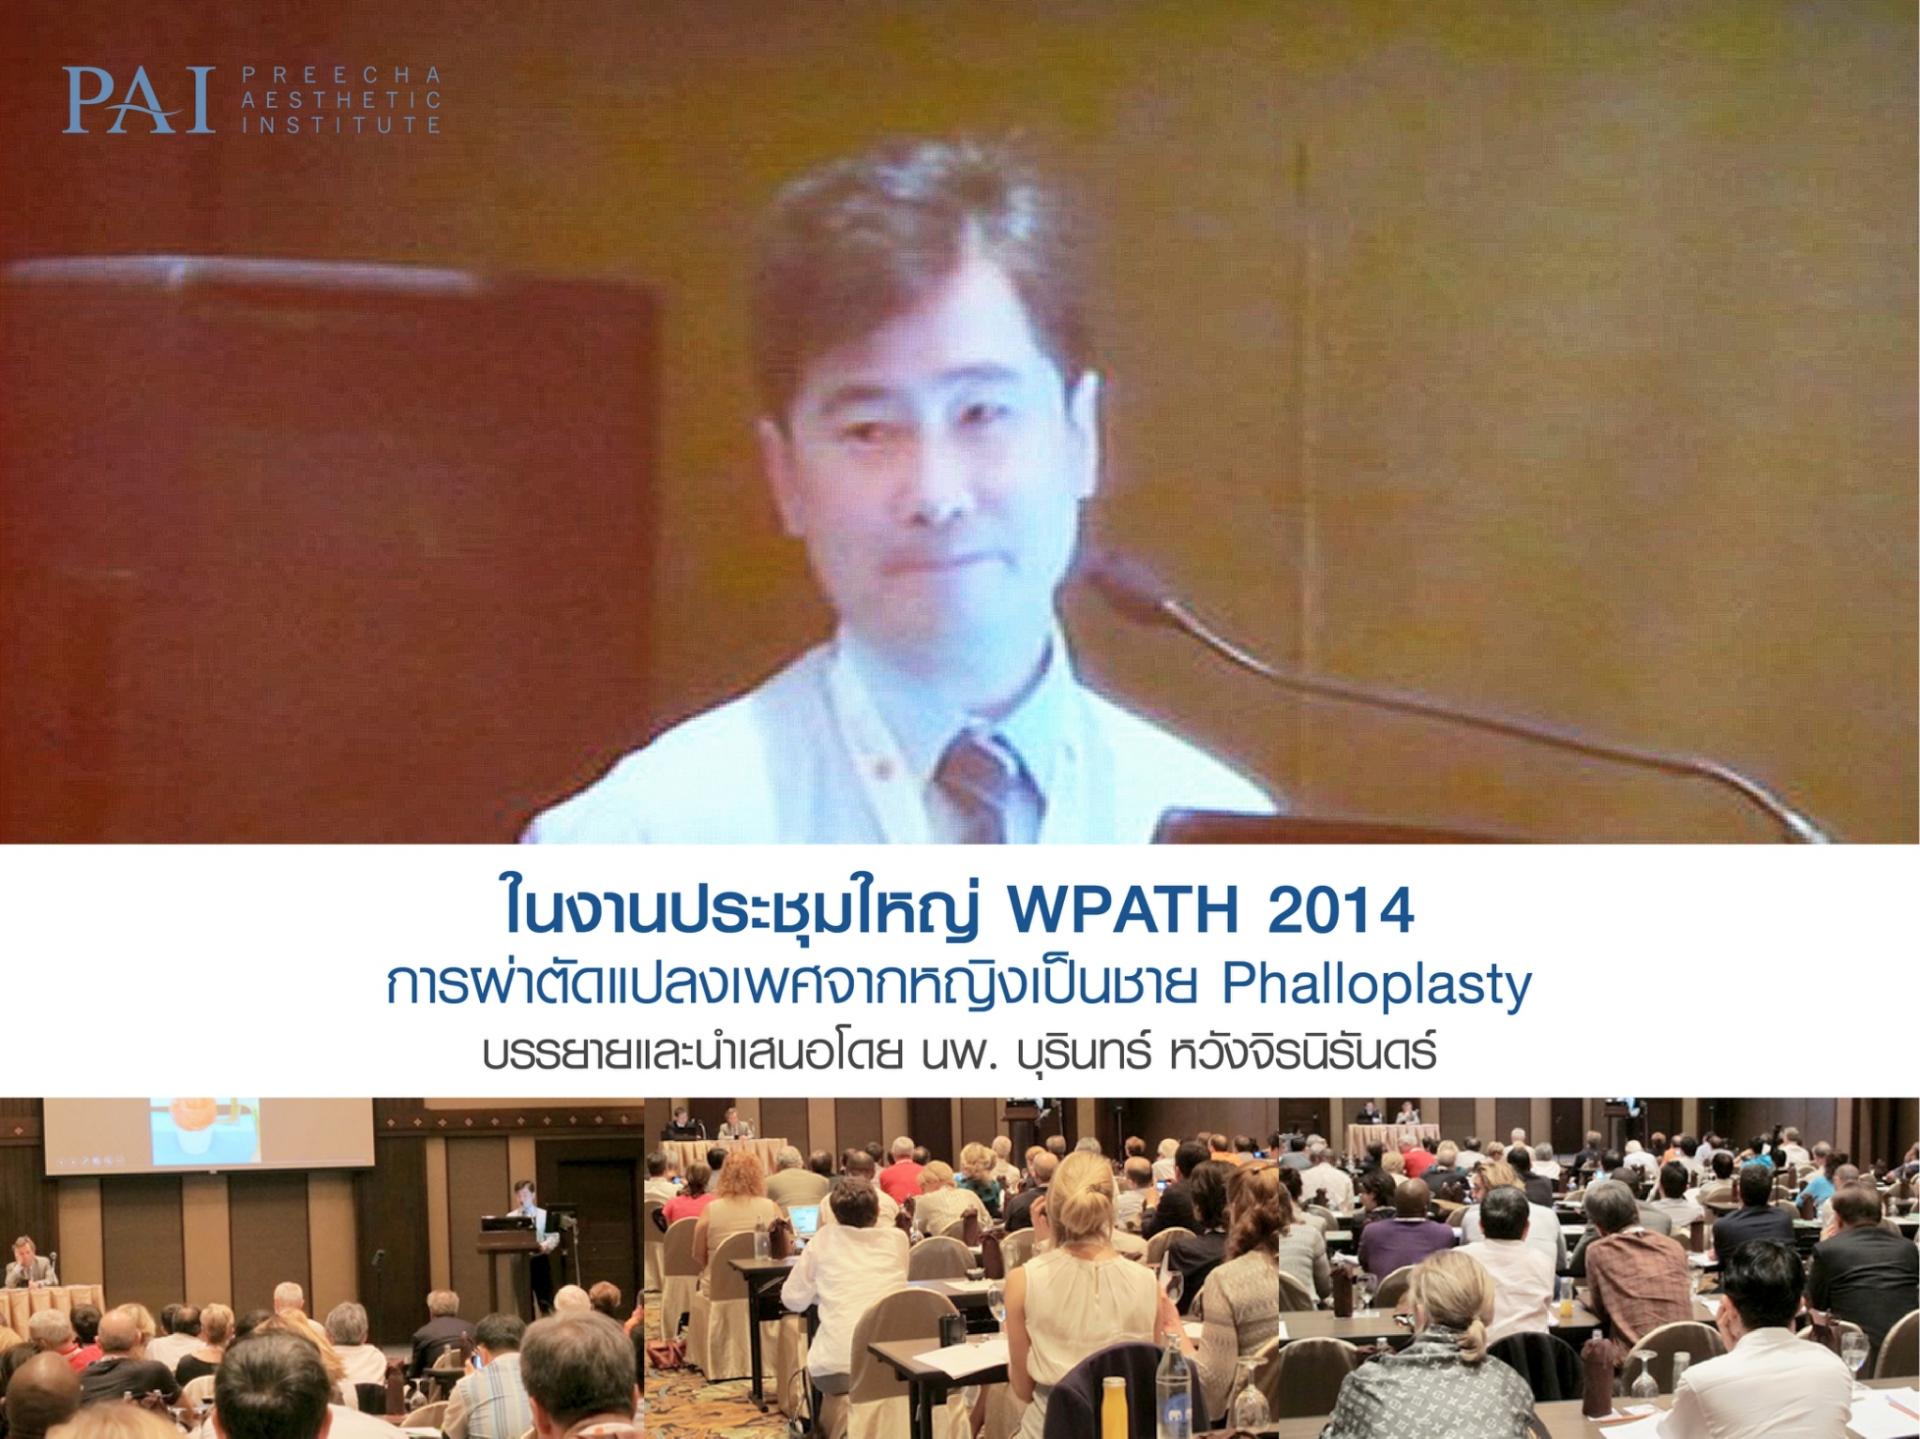 บรรยายการผ่าตัดแปลงเพศจากหญิงเป็นชาย Phalloplasty (ในงานประชุมใหญ่ WPATH 2014)